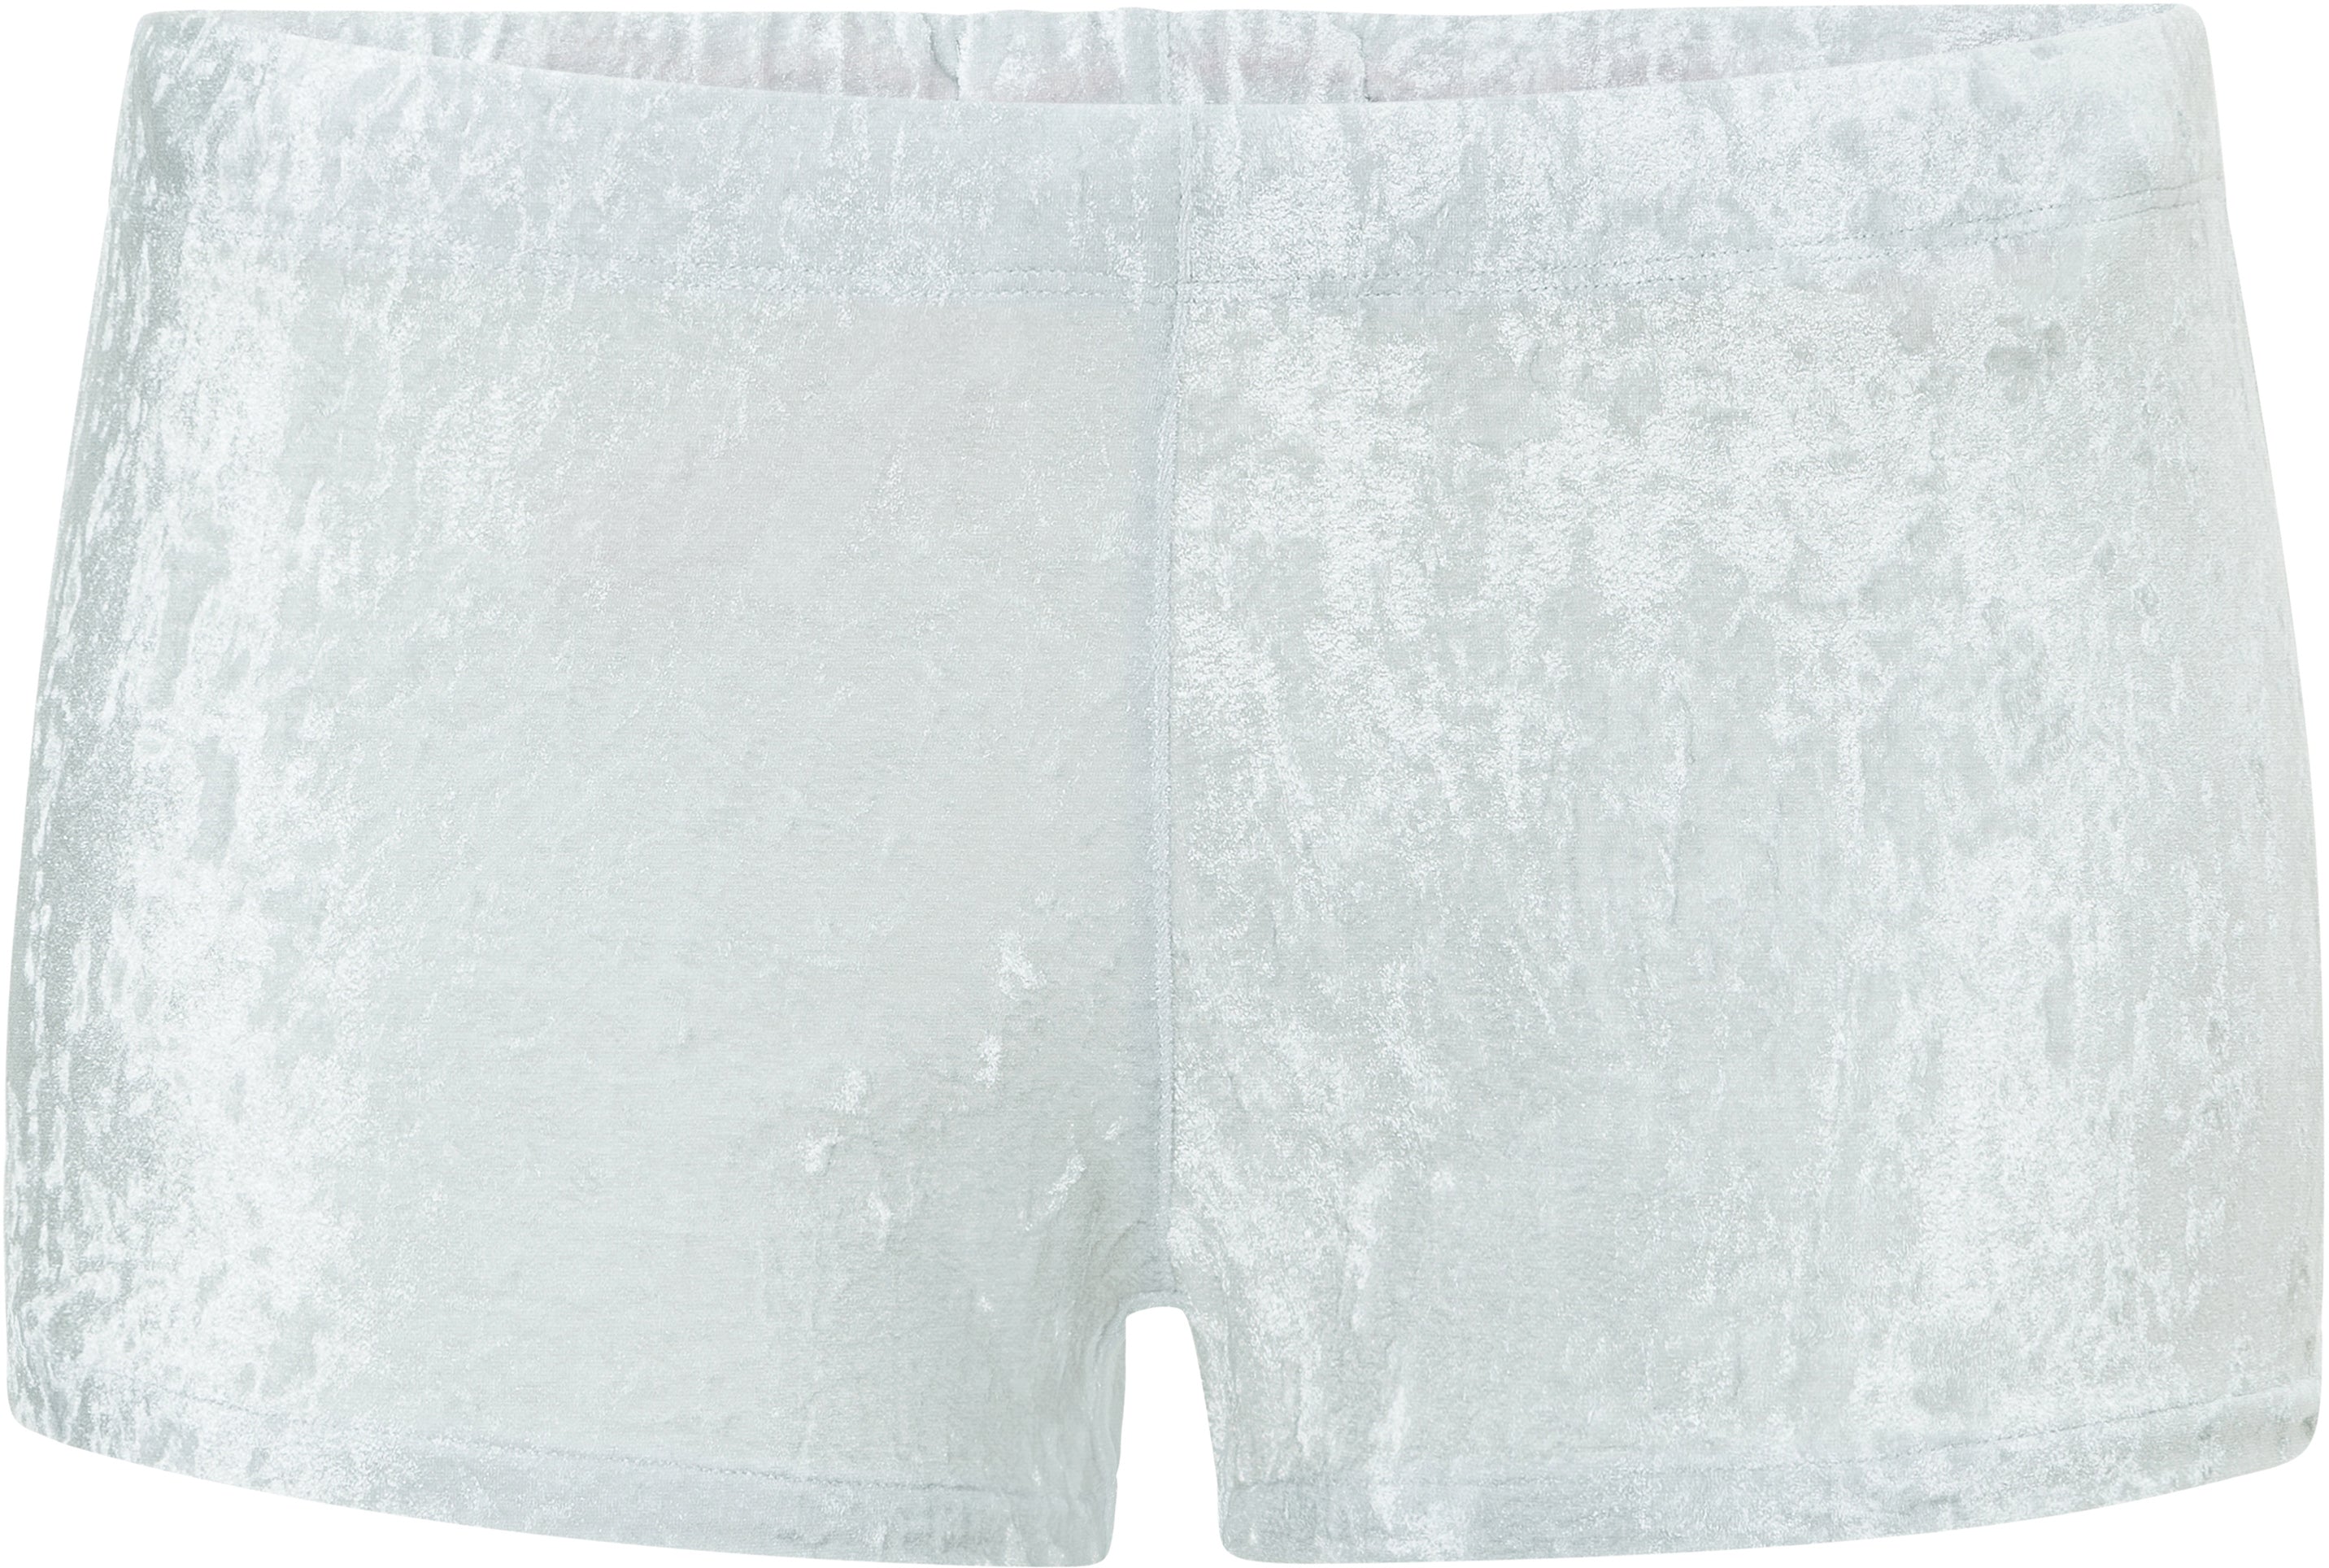 Eniqua - Soft Summer Silver Hotpants